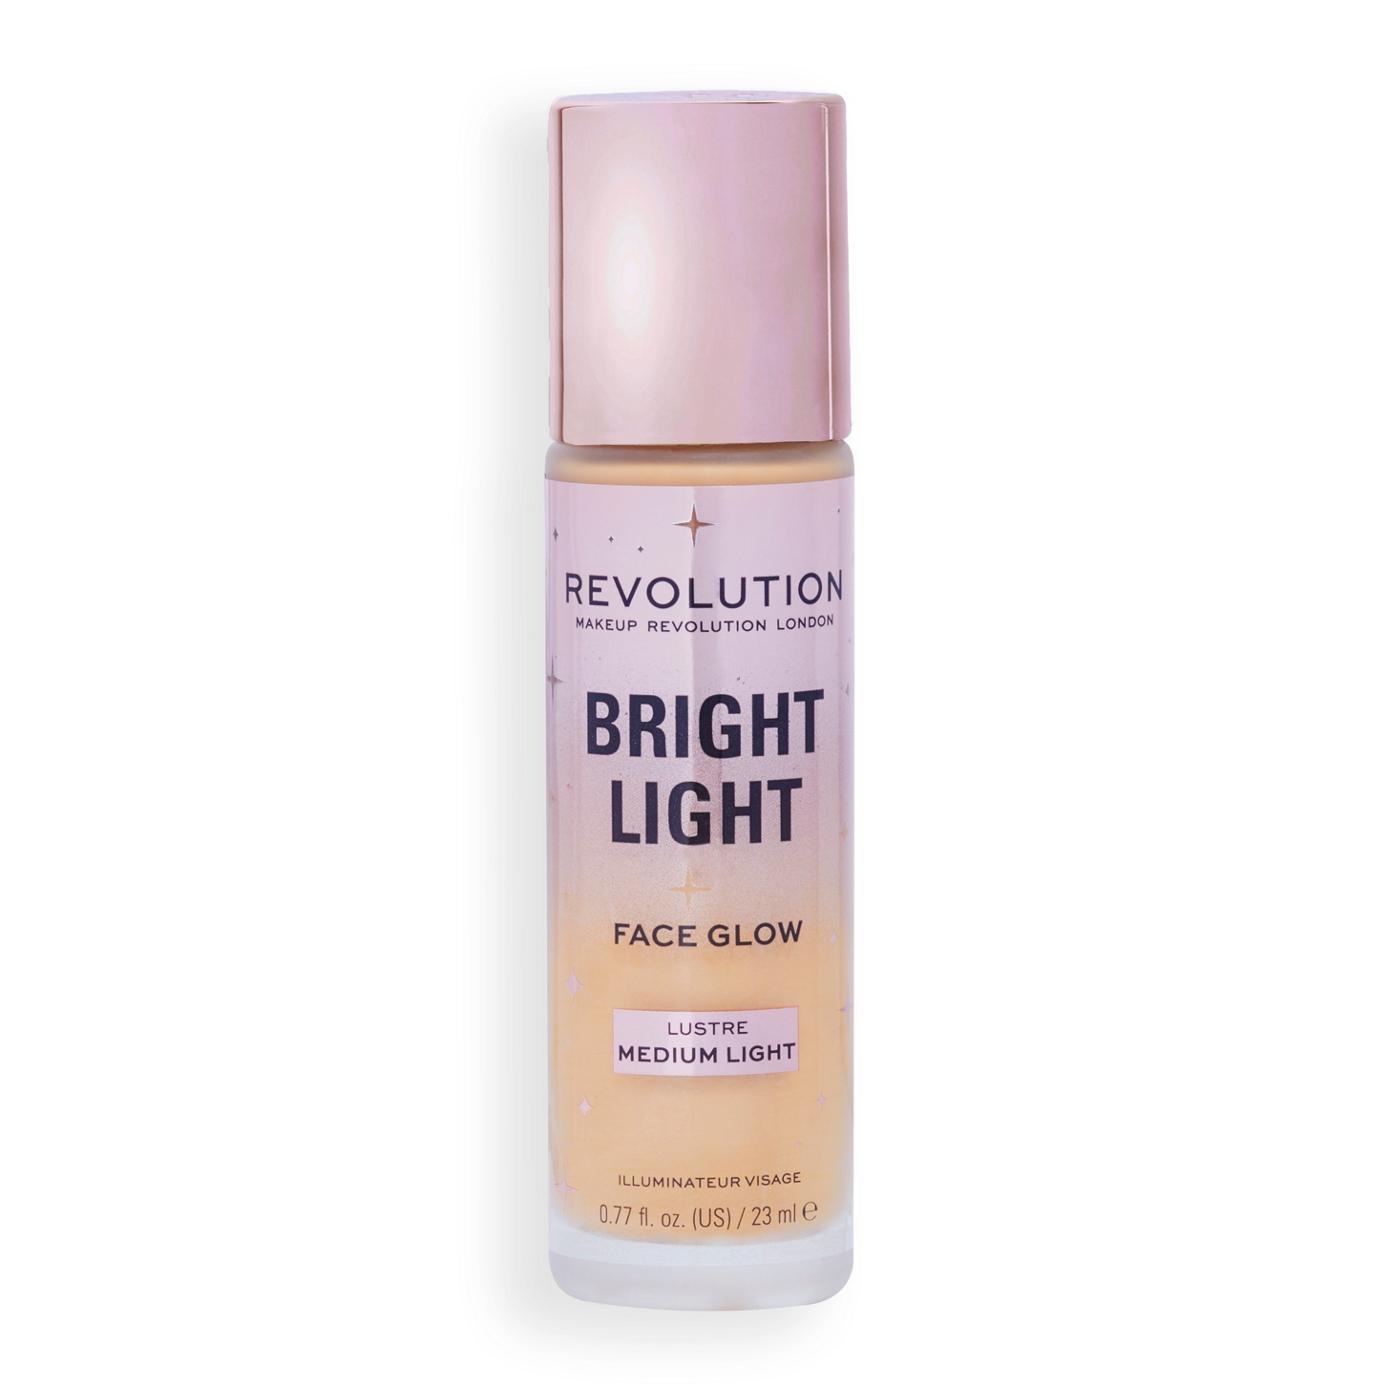 Makeup Revolution Bright Light Face Glow - Lustre Medium Light; image 1 of 3